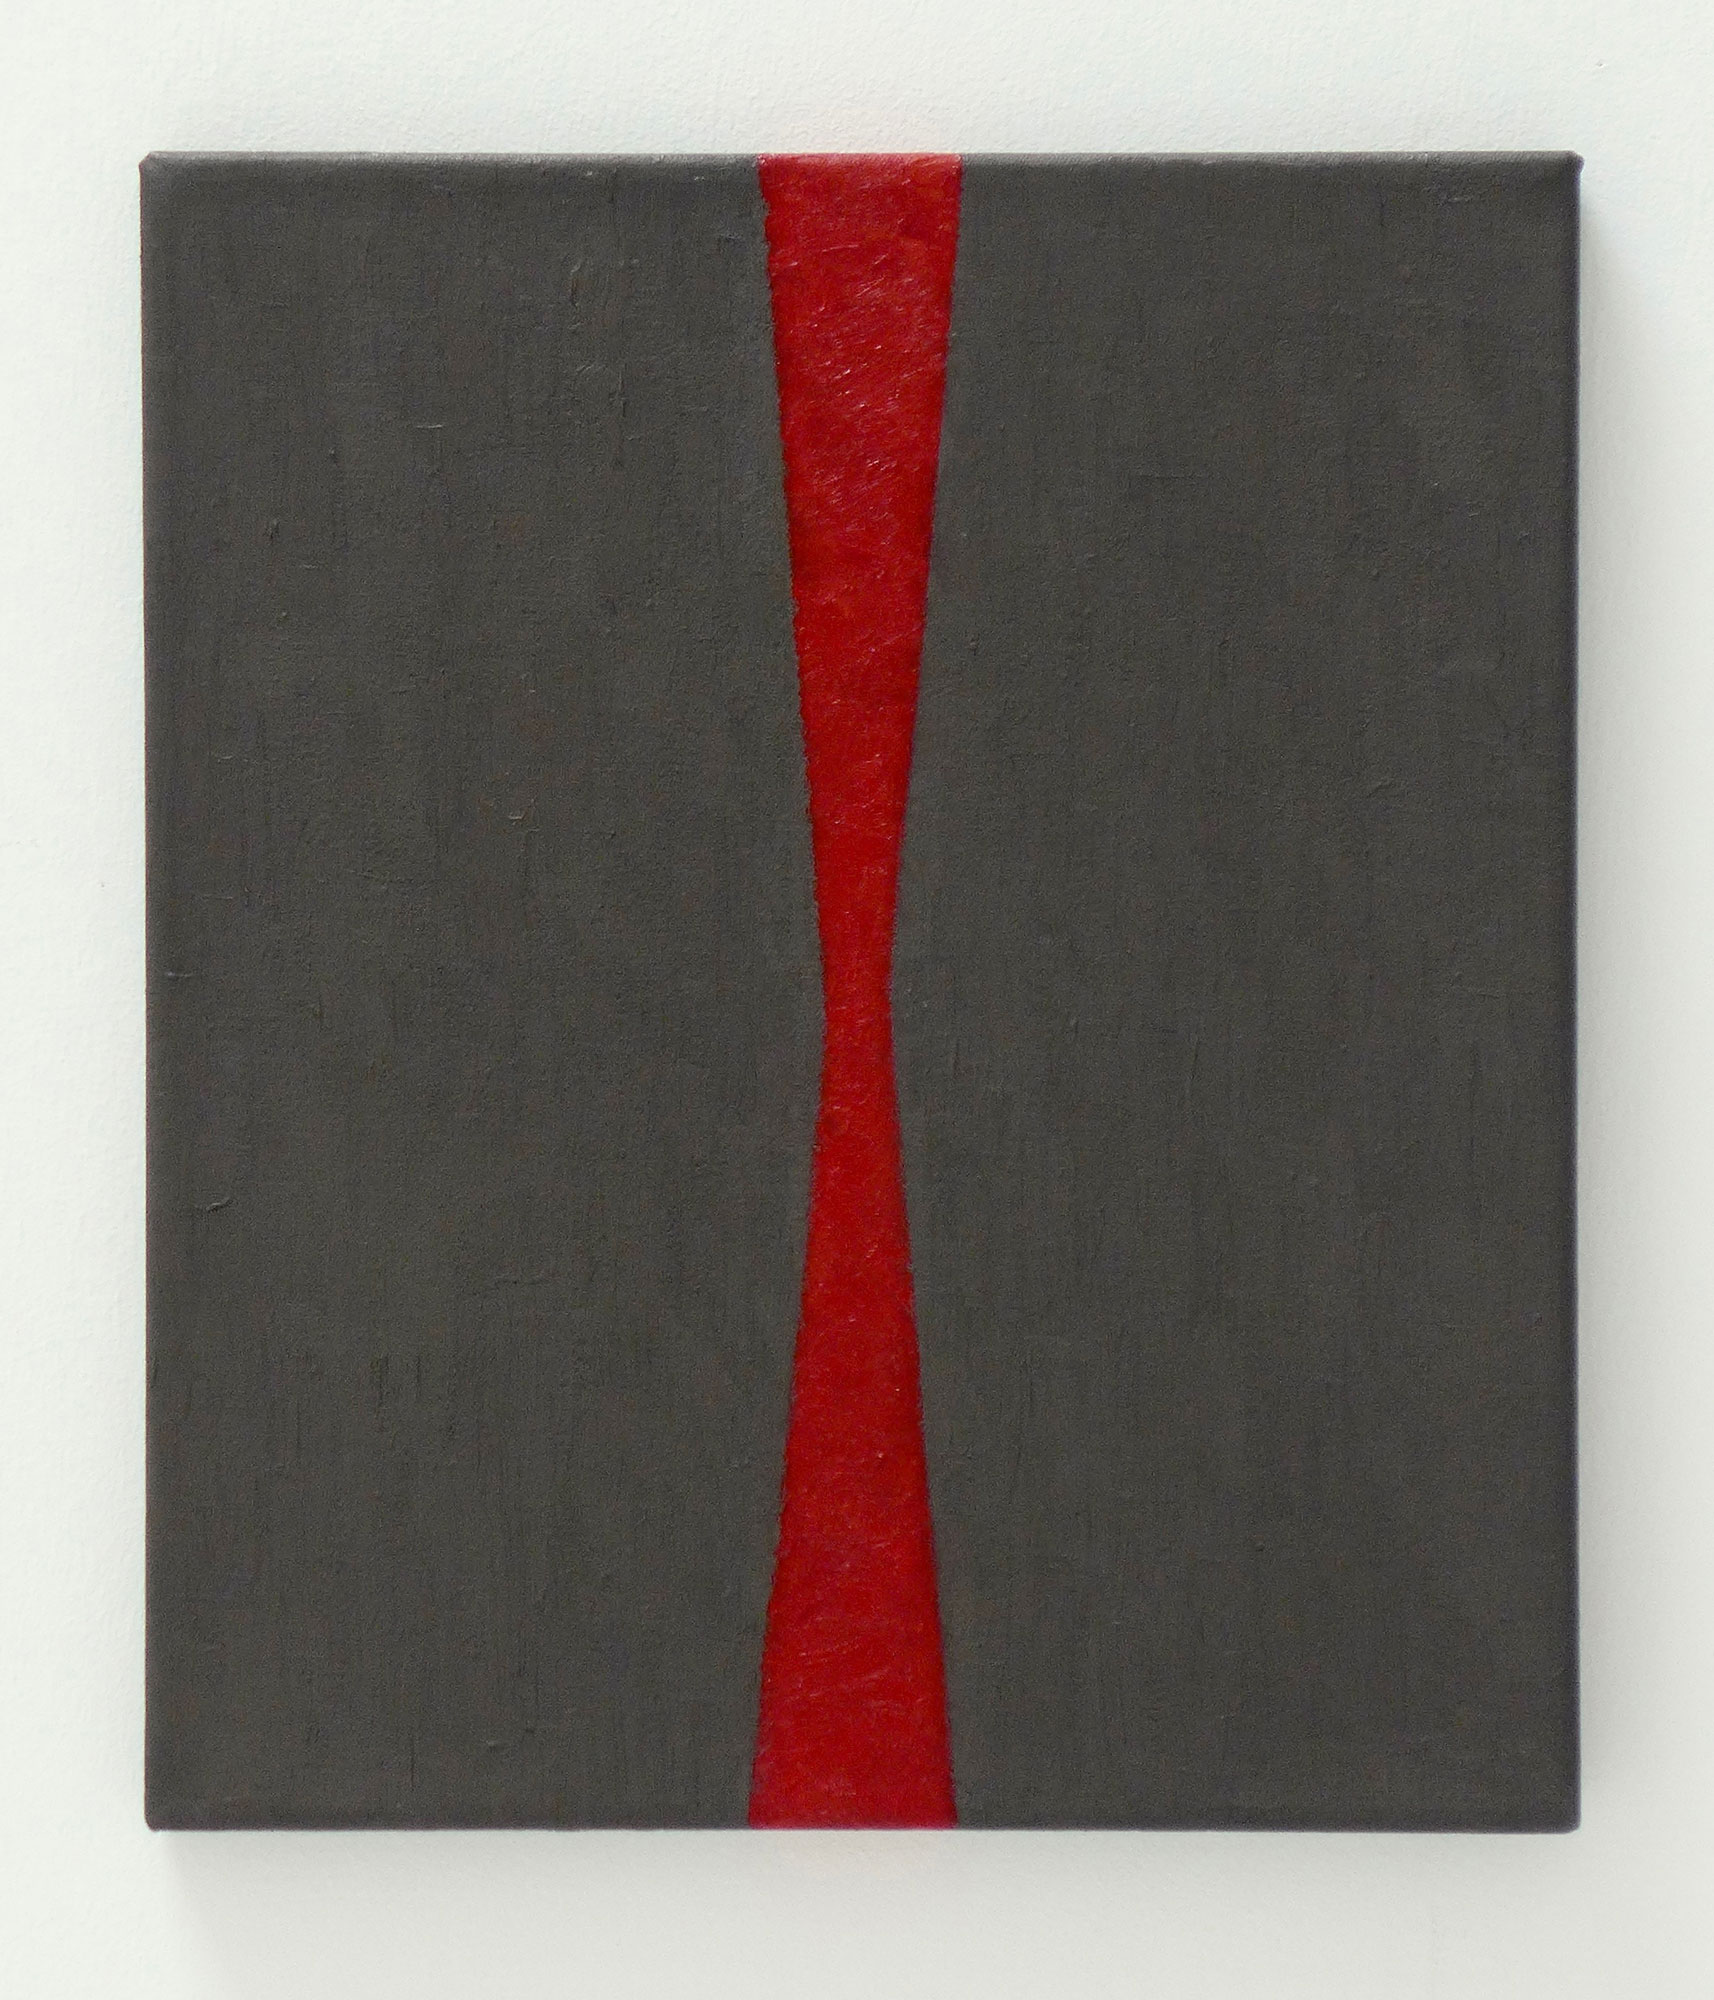 Kenneth Dingwall, Span, 2006, oil and wax on canvas, 35cm x 30.5cm